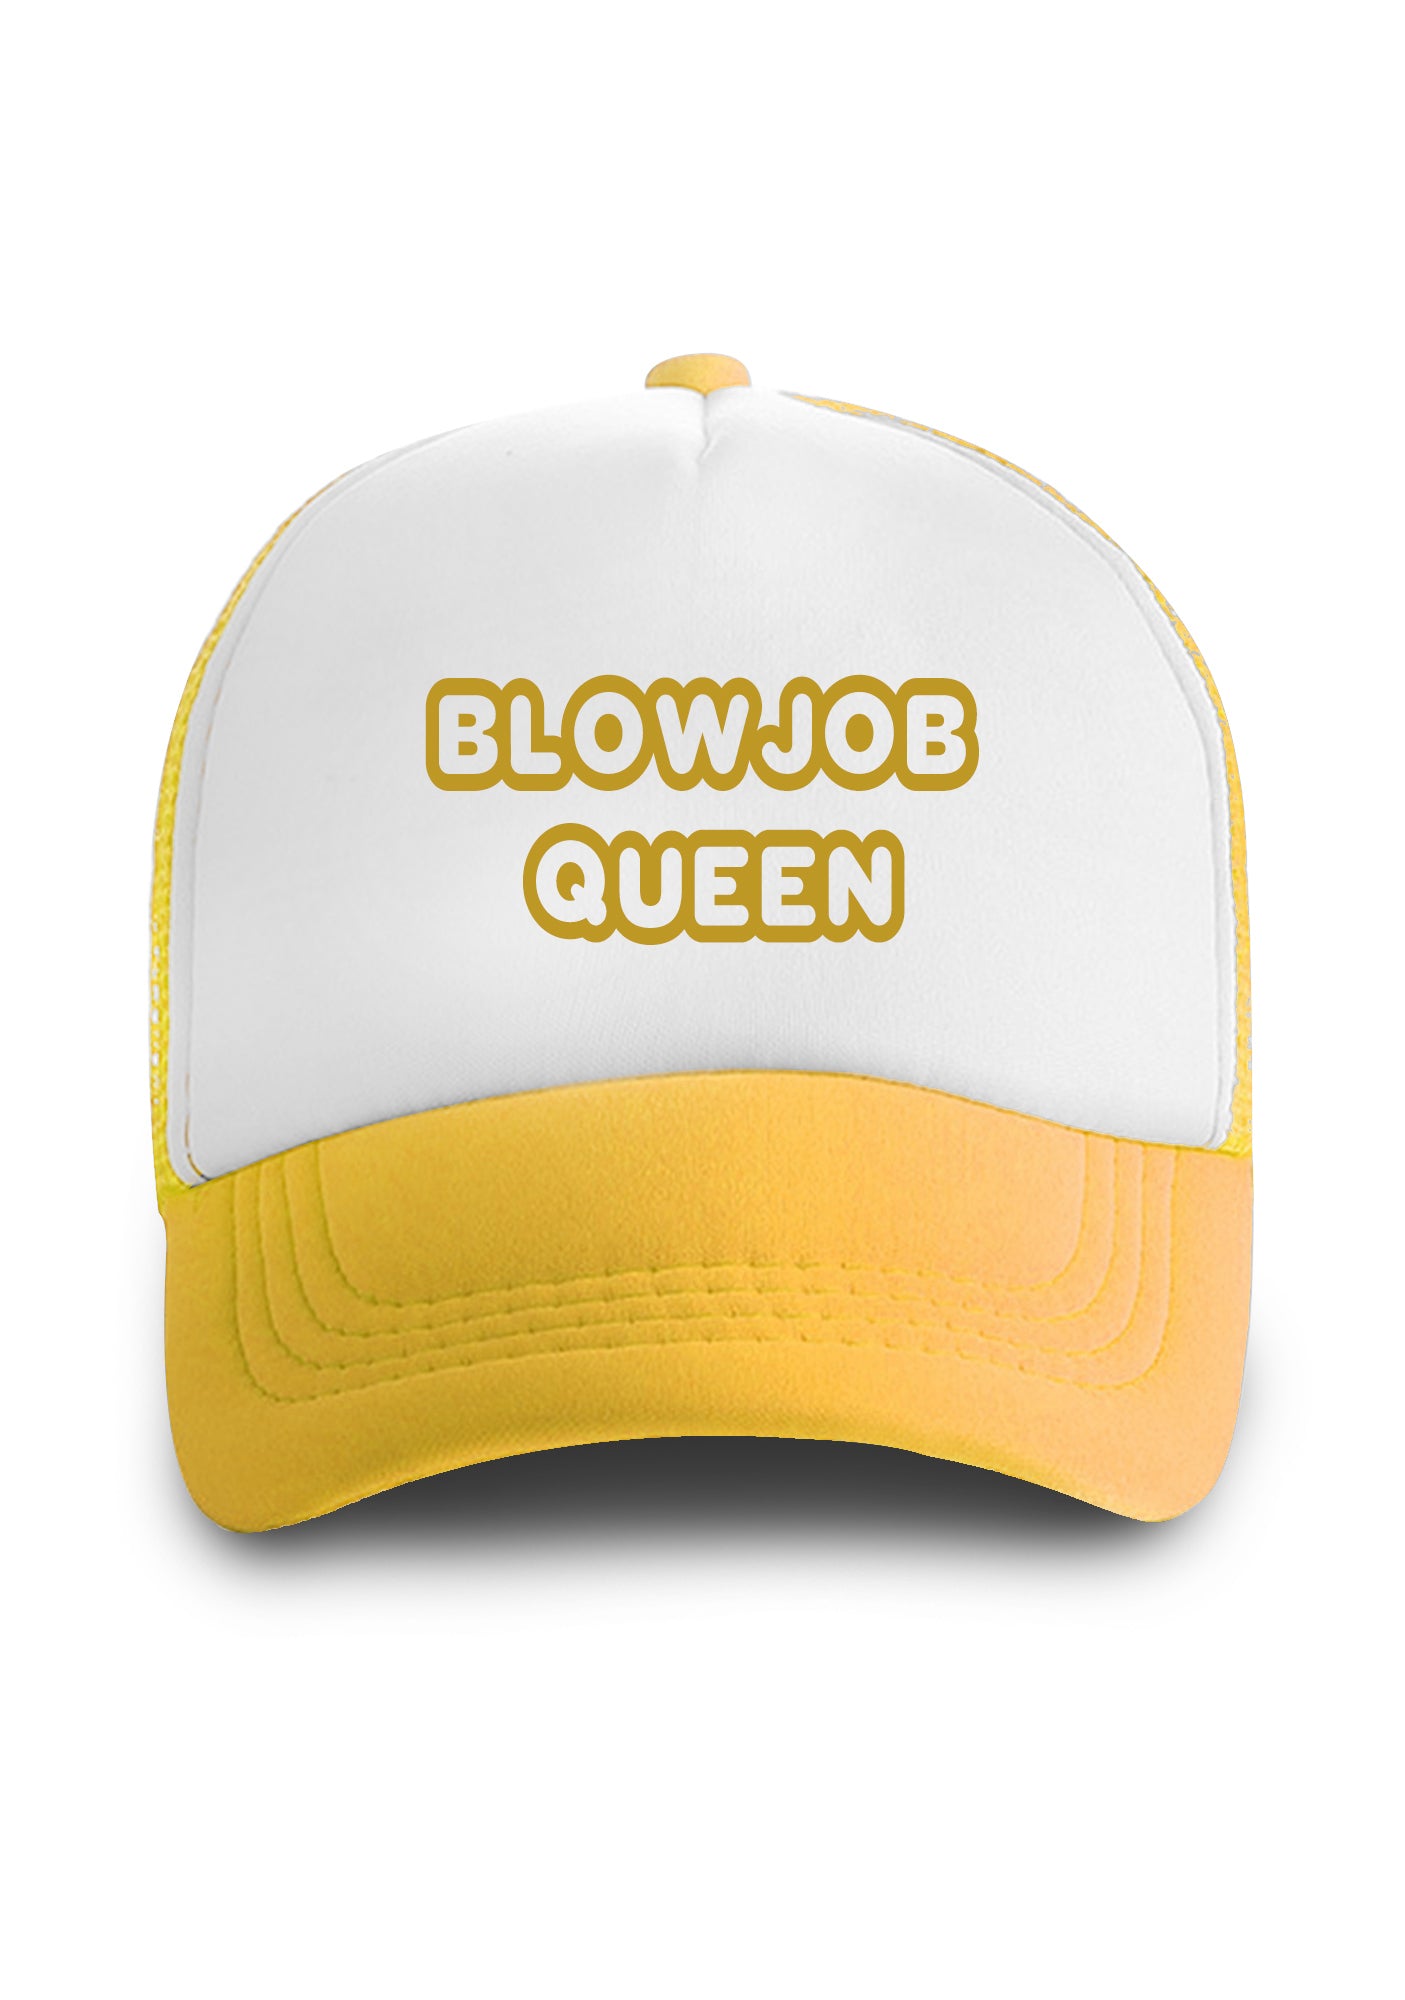 BJ Queen Trucker Hat